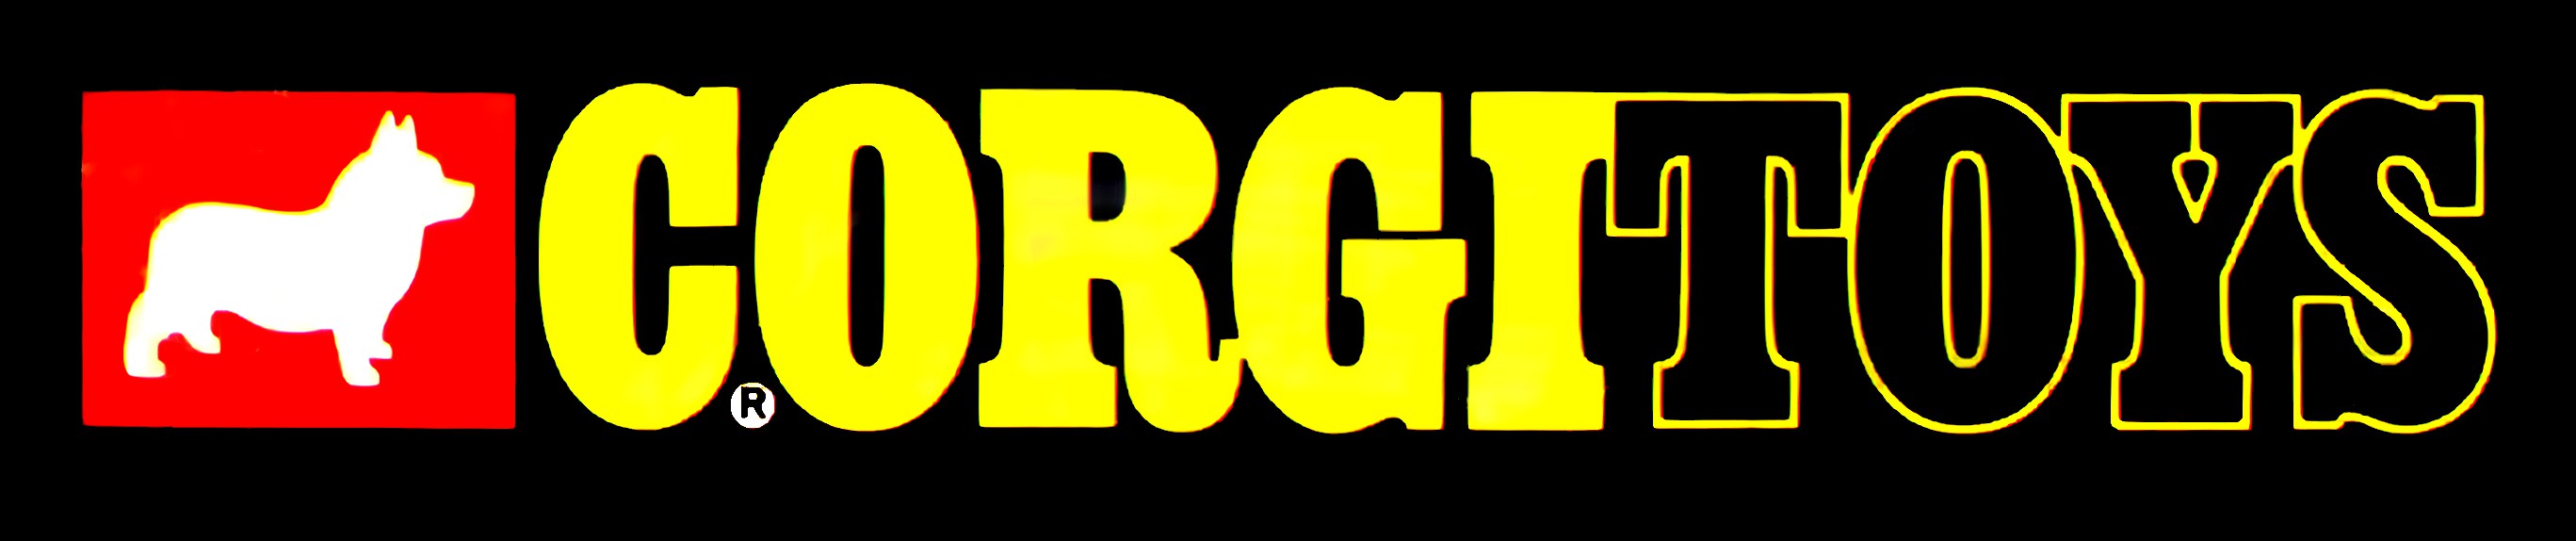 Corgi toys logo